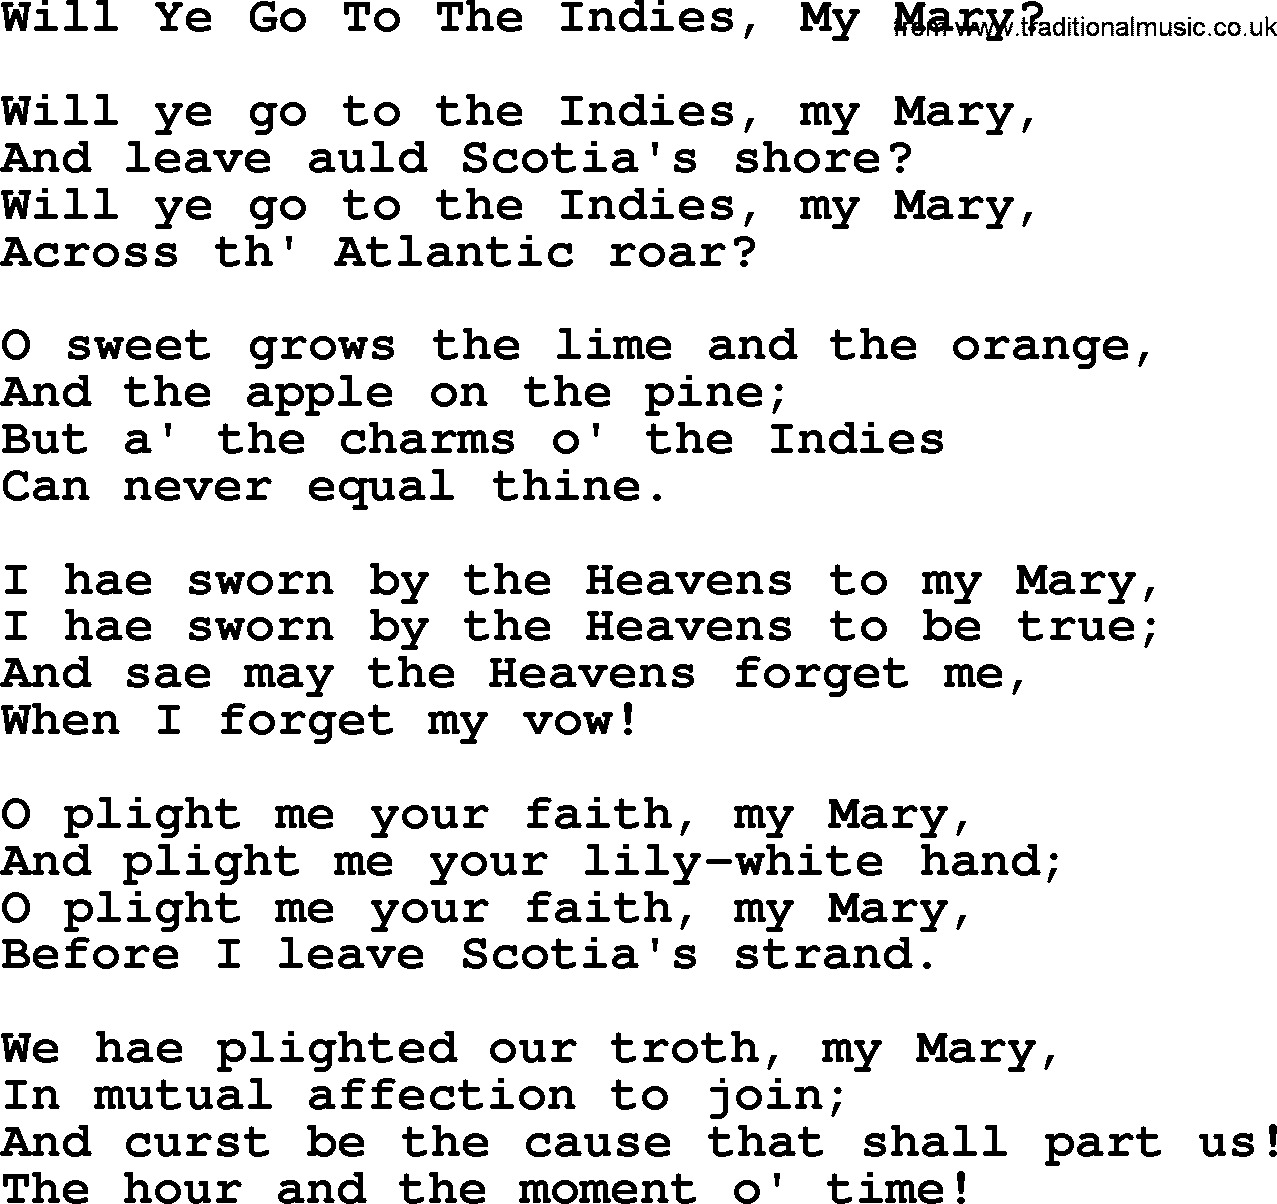 Robert Burns Songs & Lyrics: Will Ye Go To The Indies, My Mary 